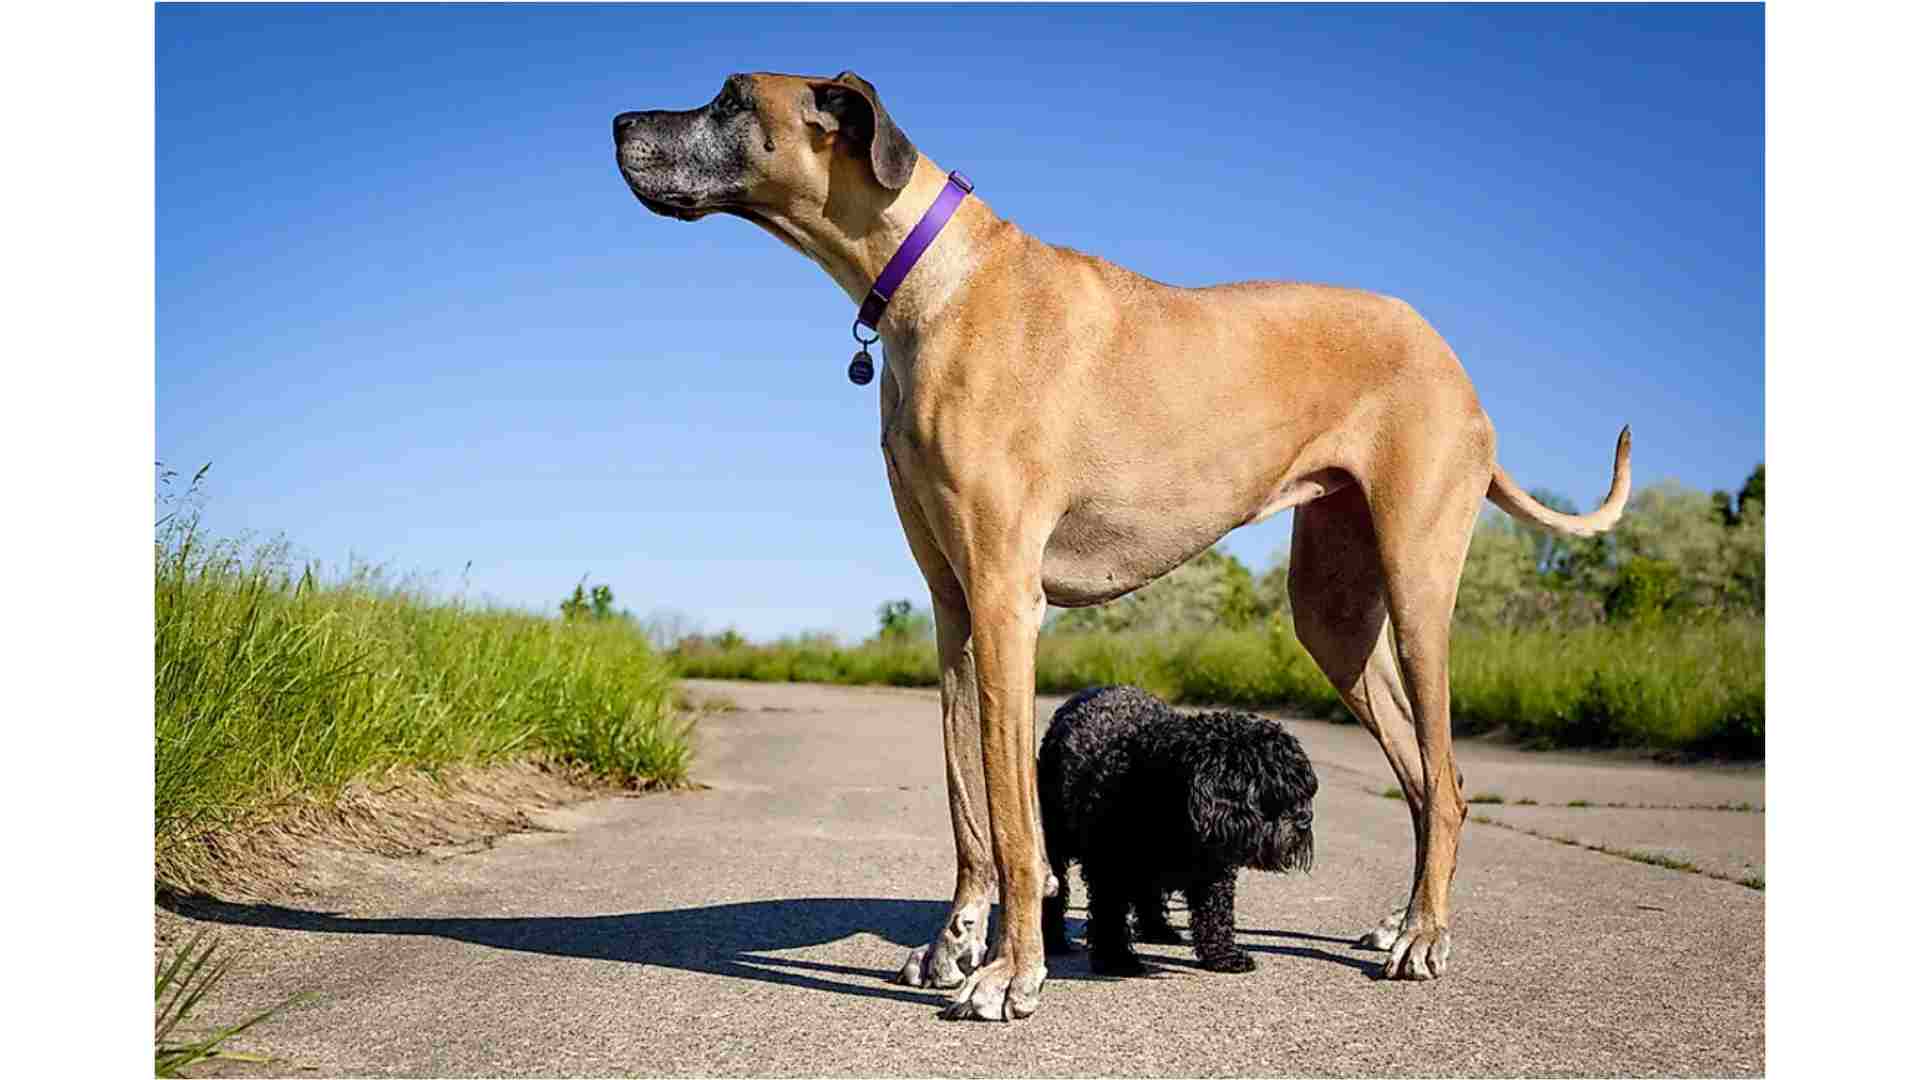 biri çok büyük biri de çok küçük olan iki köpeğin aynı karede fotoğrafı